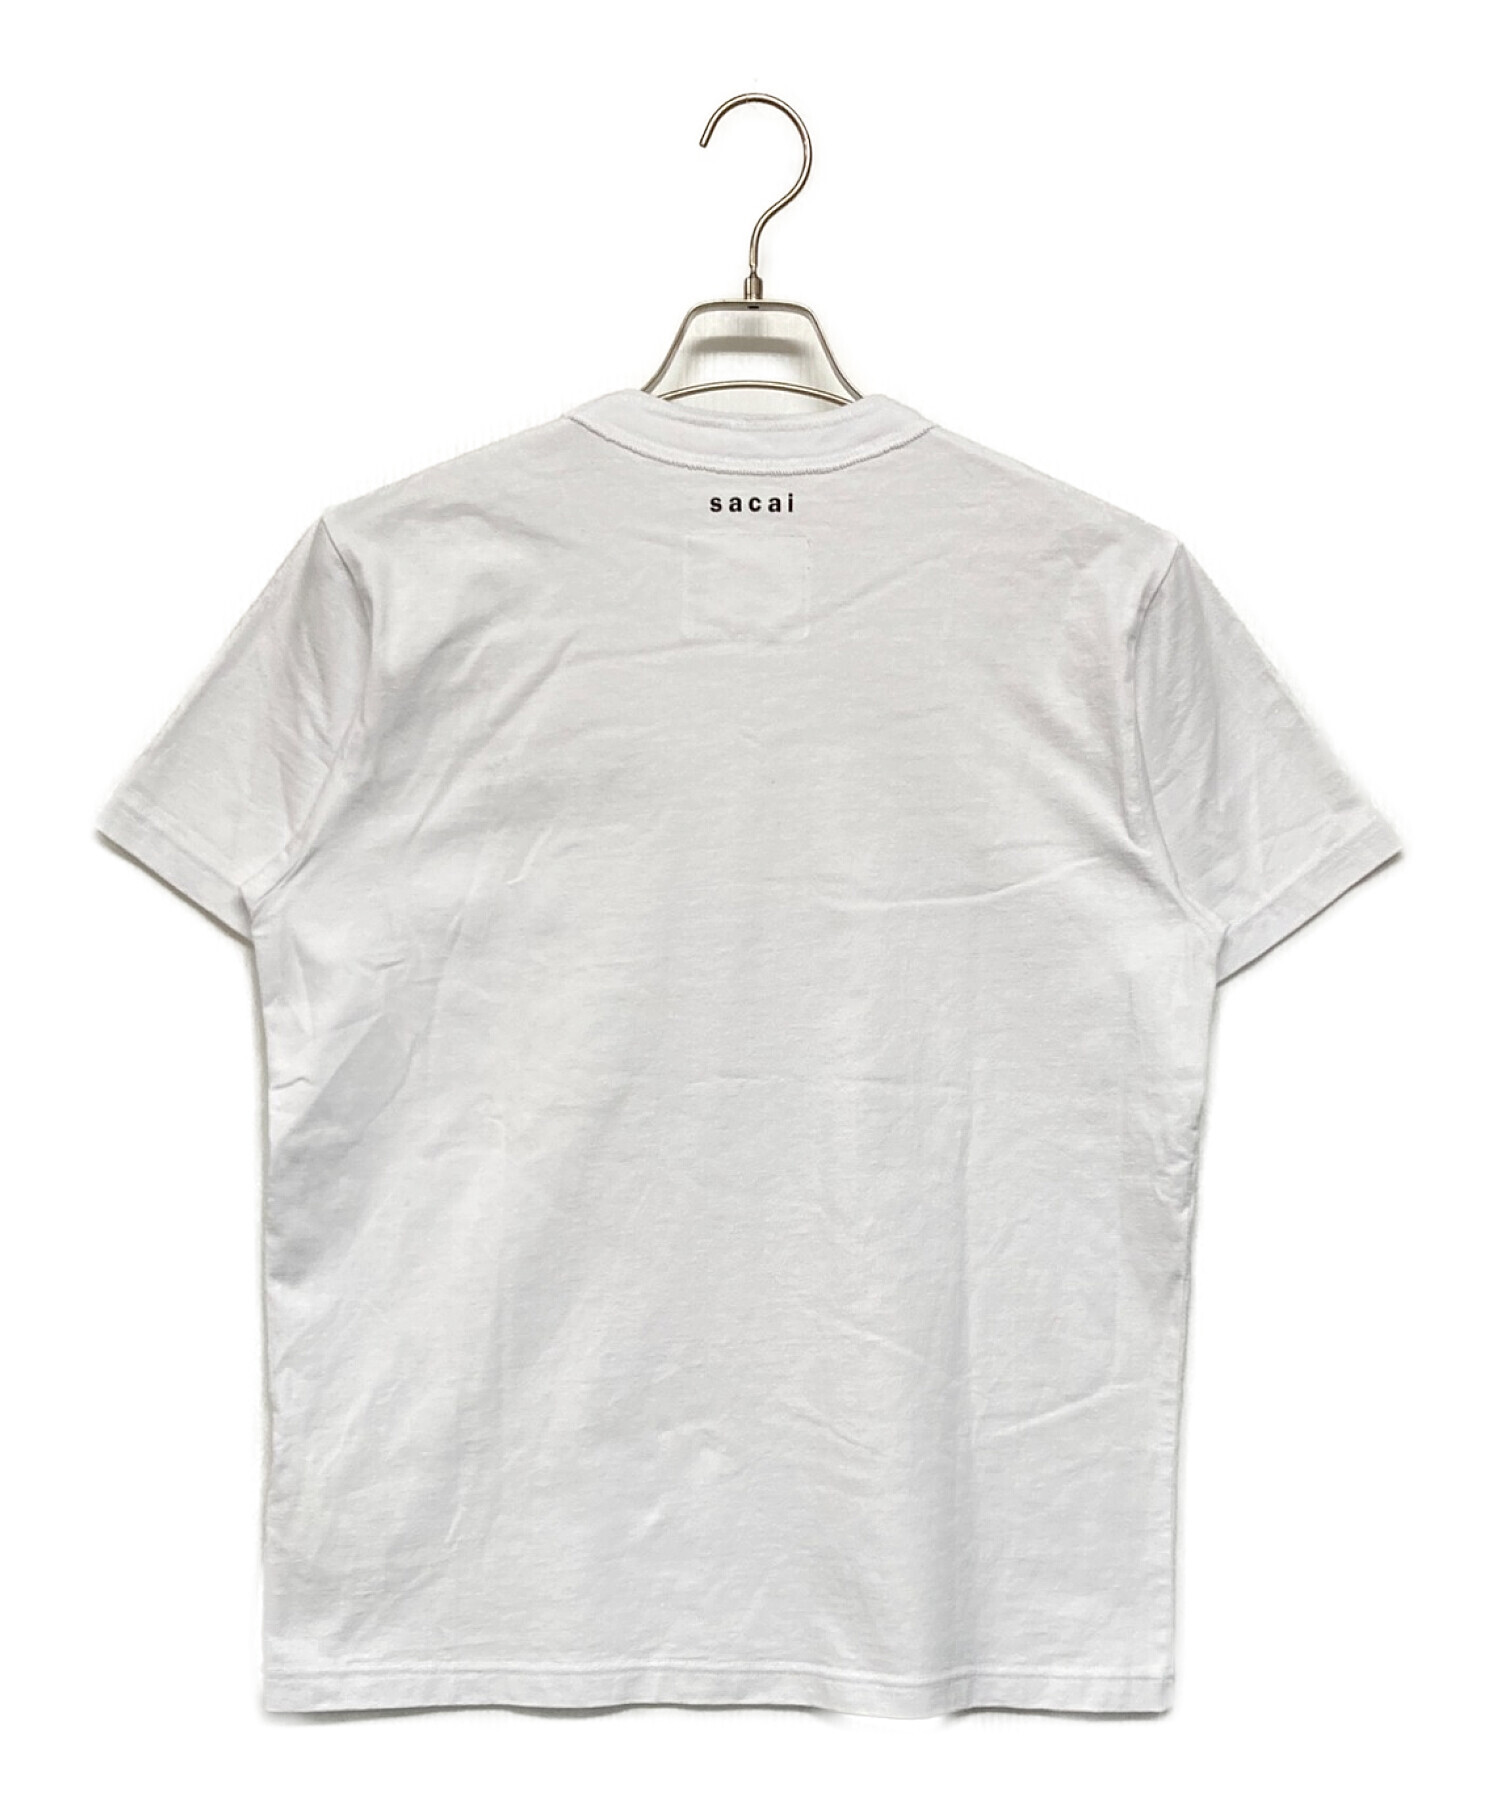 sacai (サカイ) KAWS (カウズ) Embroidery T-shirt ホワイト サイズ:SIZE 1